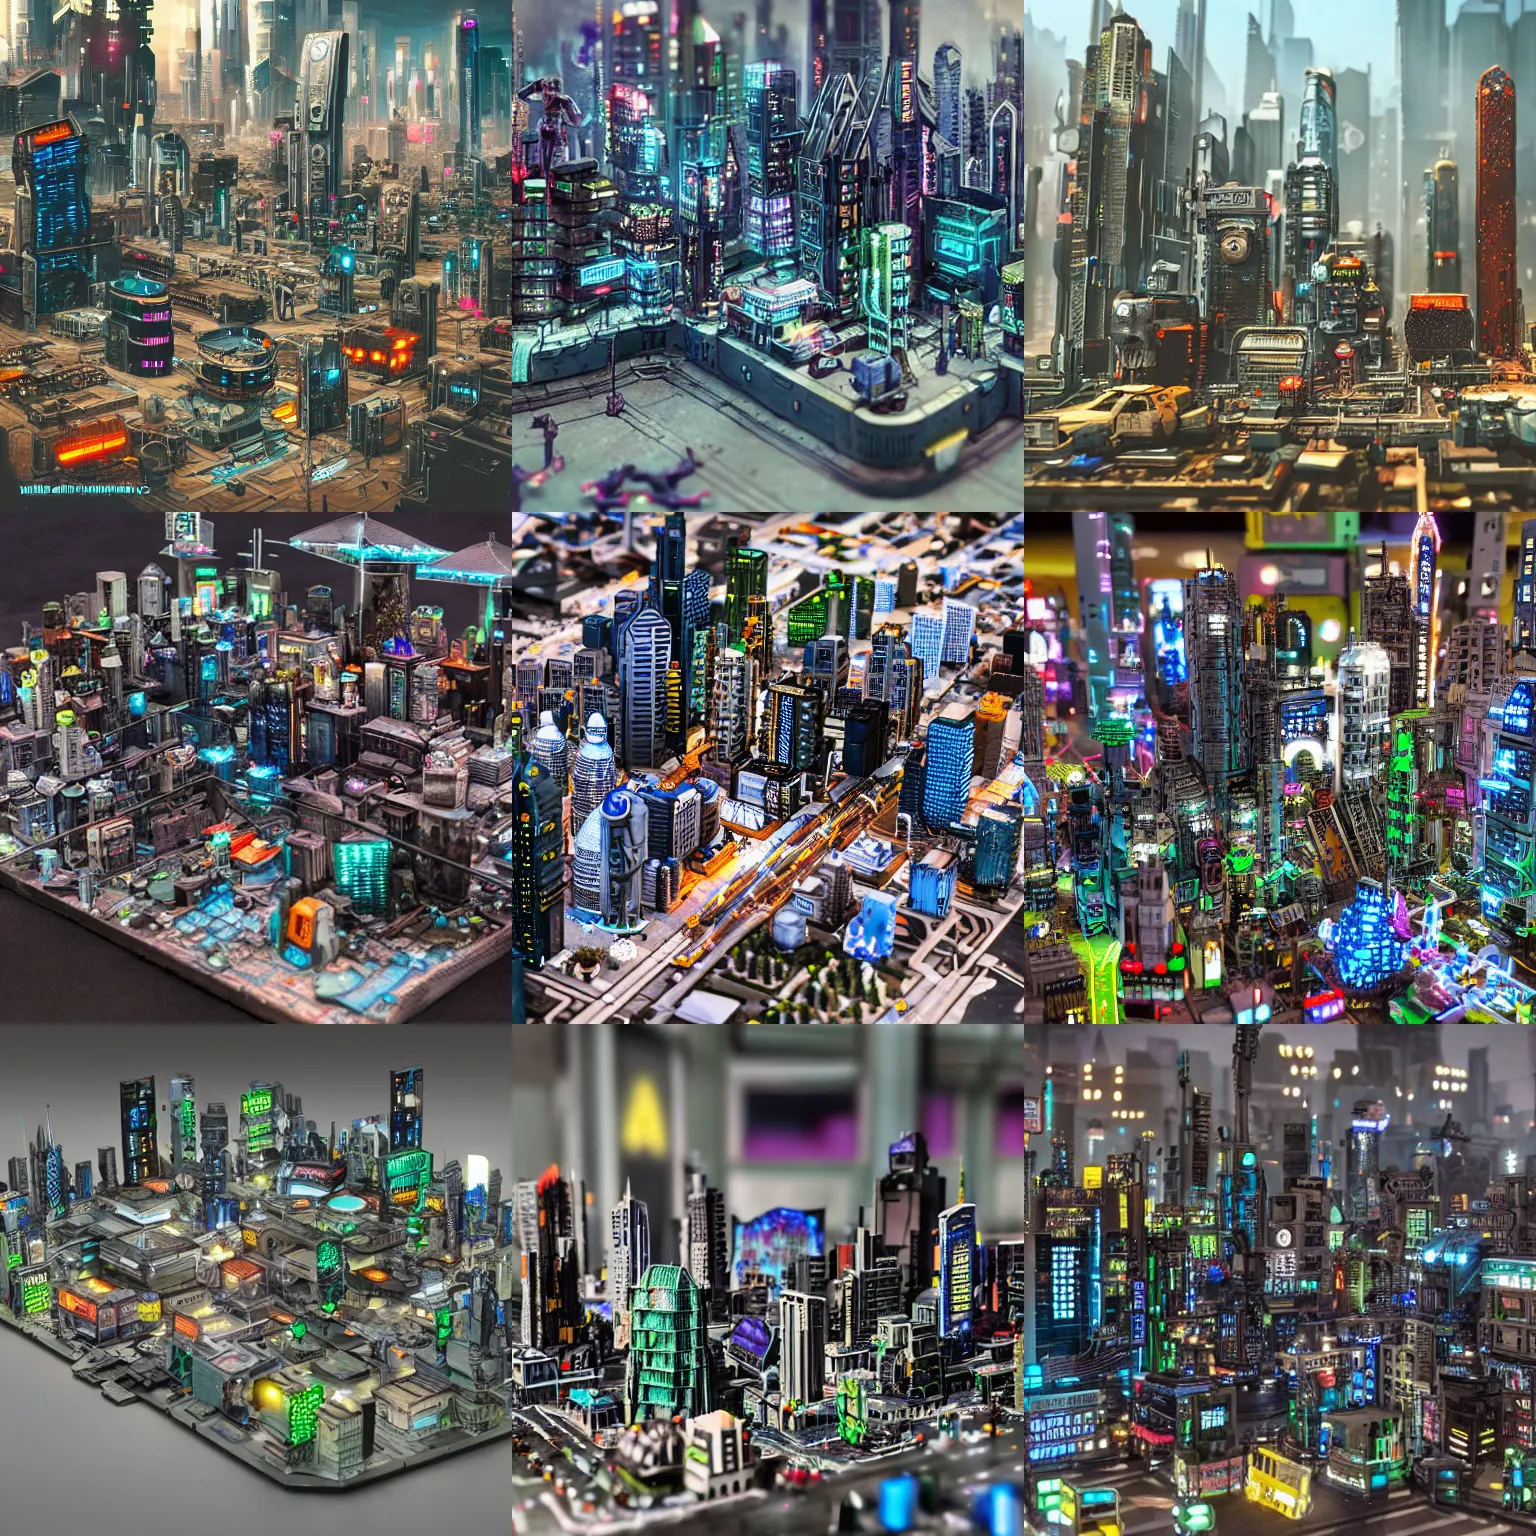 Prompt: miniature cyberpunk city